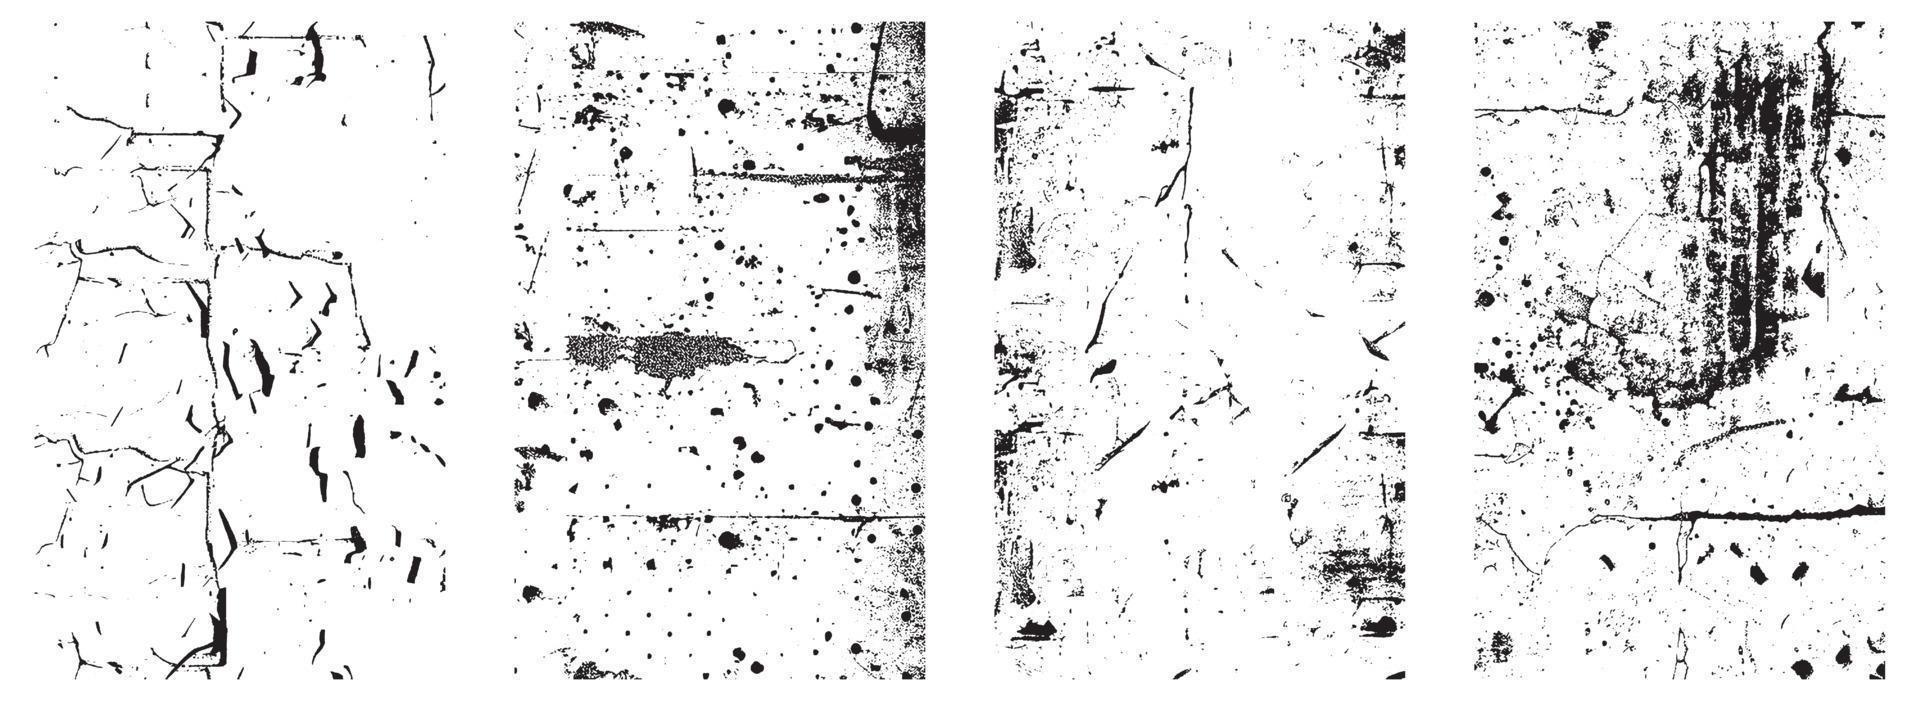 conjunto de grunge afligido vector texturas - negro y blanco antecedentes con salpicar, rasguño y manchar efectos eps 10